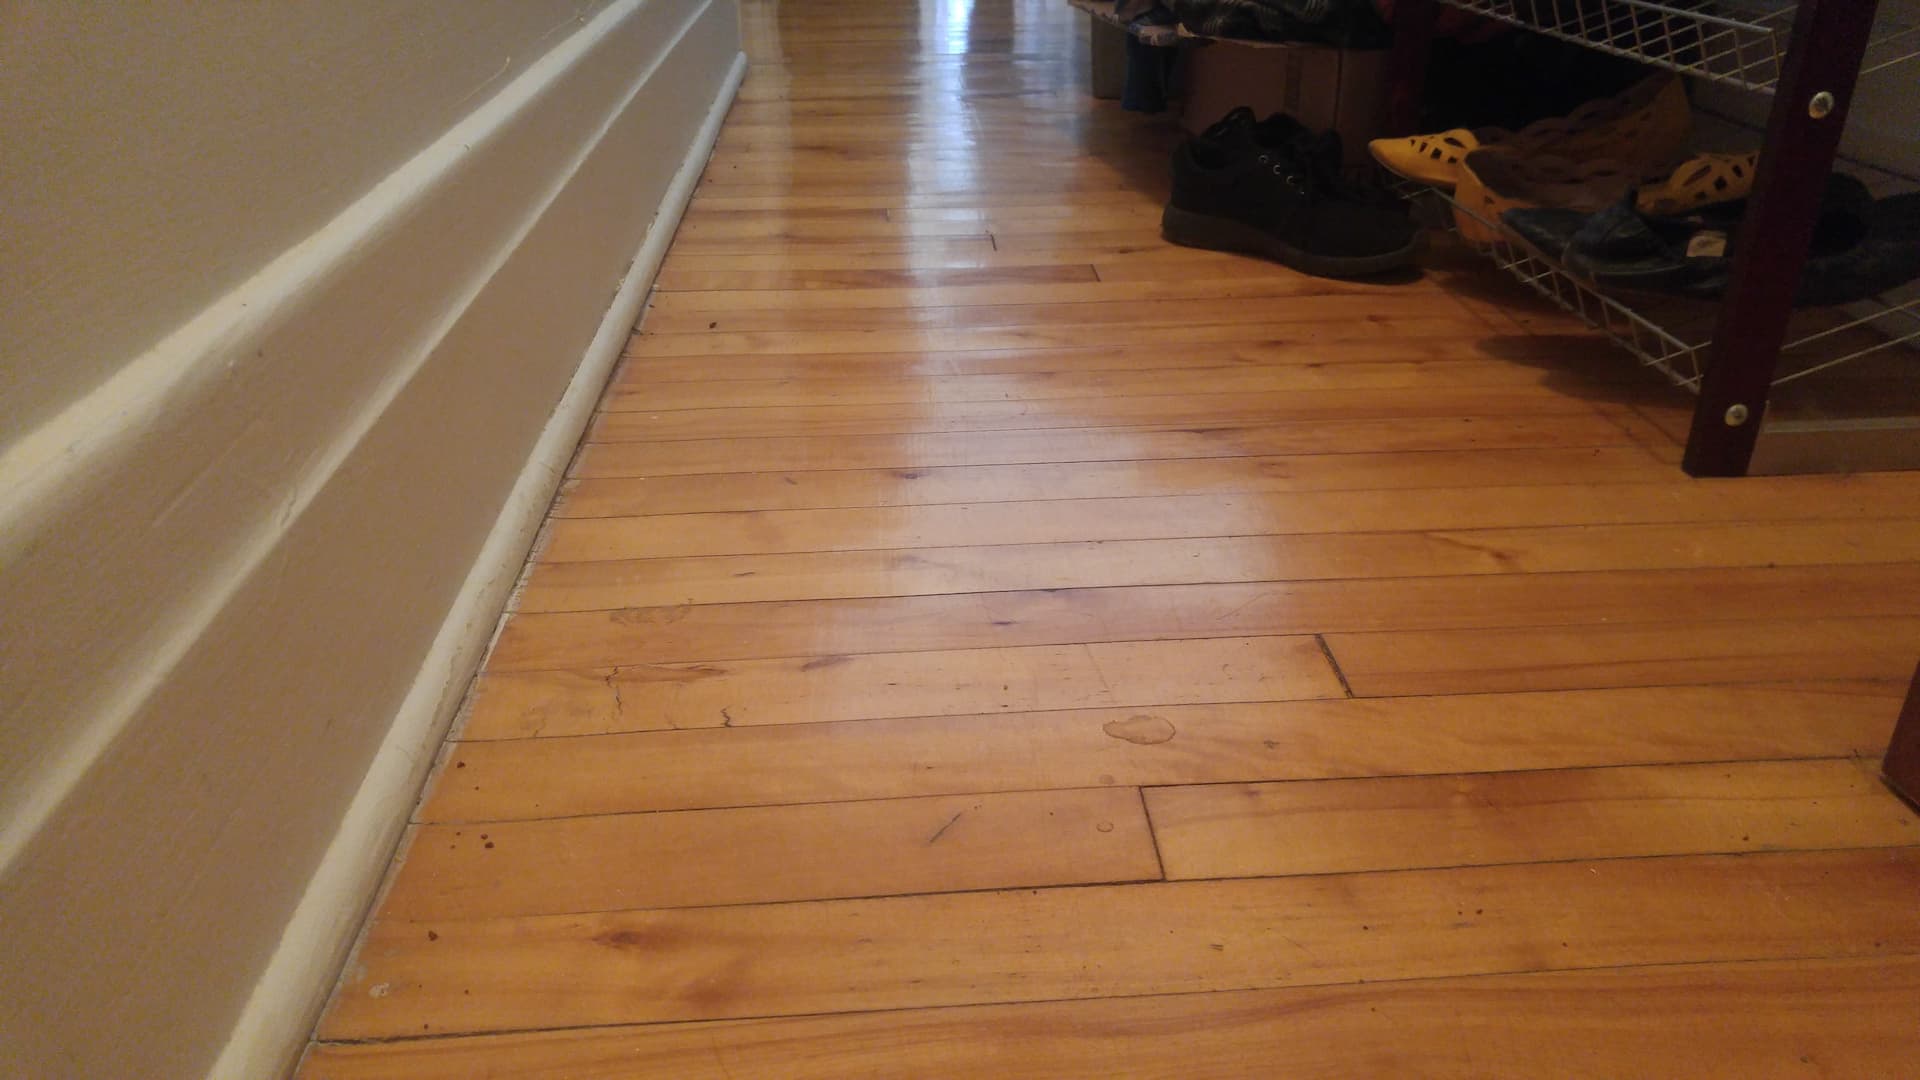 Comment réparer un plancher qui a été rayé par des meubles? Montréal